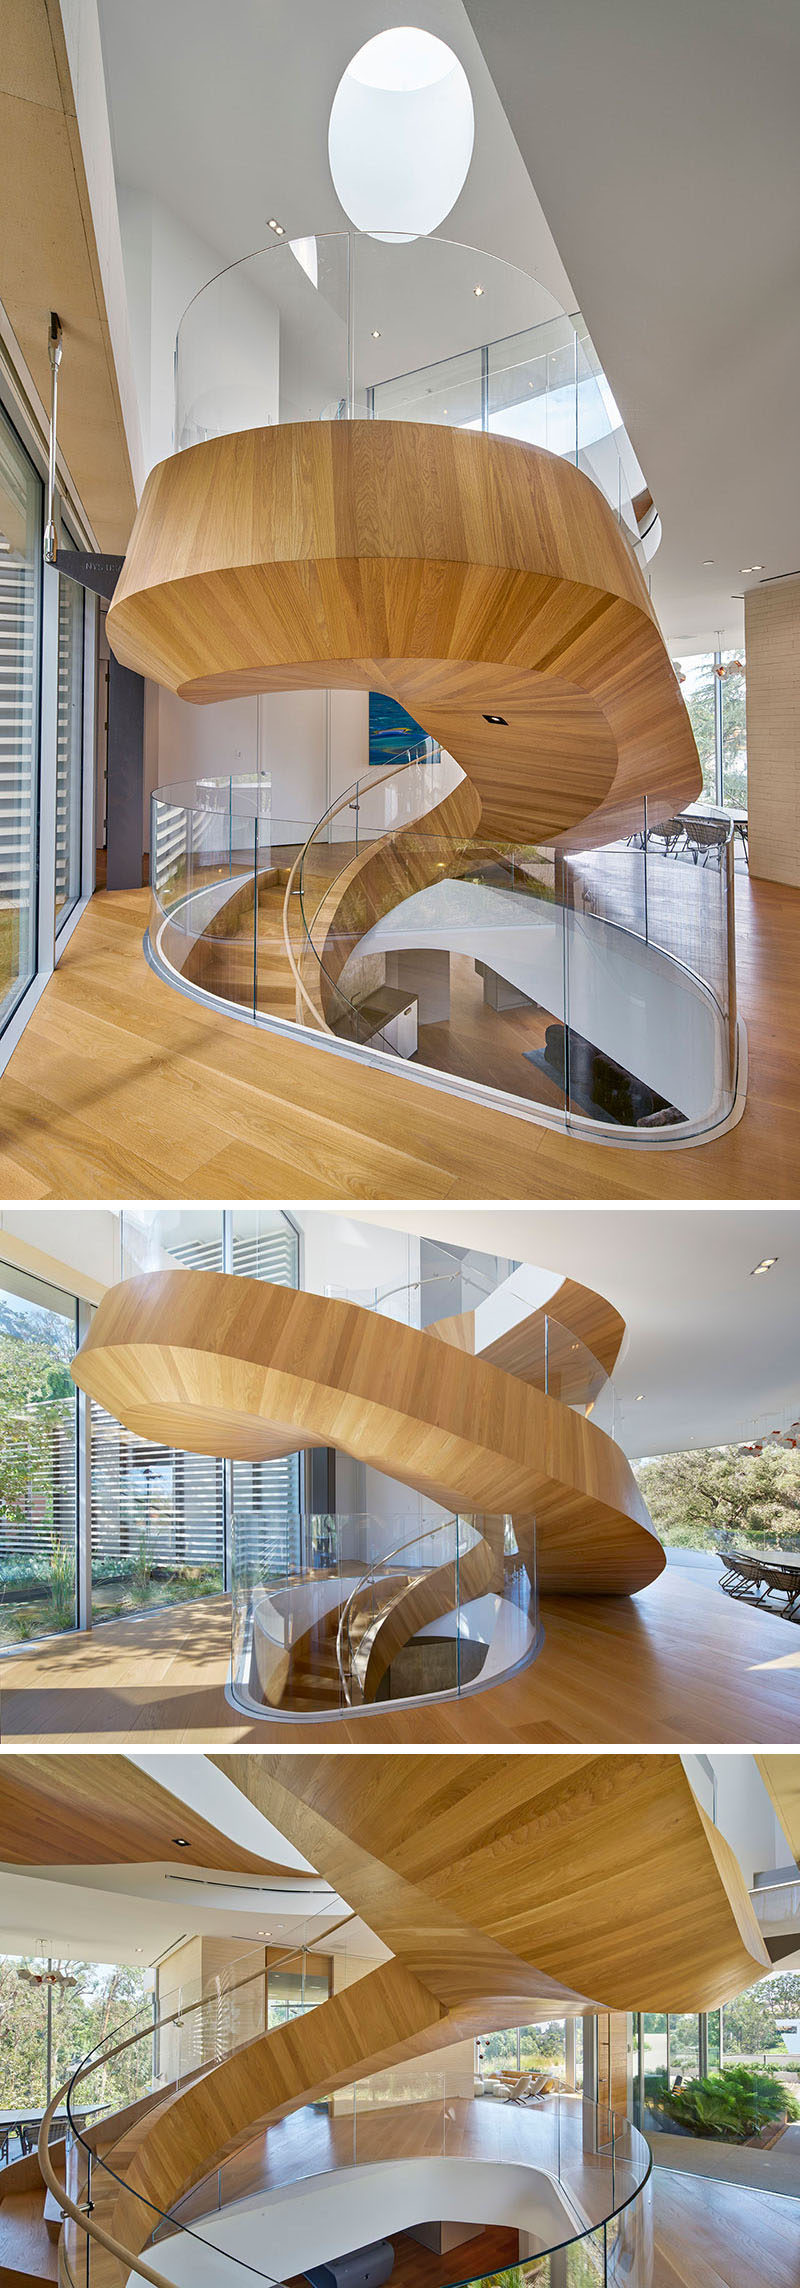 Эта большая винтовая лестница из дерева не только соединяет разные уровни дома, но также разделяет пространство и выступает в роли скульптурной инсталляции. # Спиральная лестница # Спиральная лестница # Современная спиральная лестница # Деревянная спиральная лестница